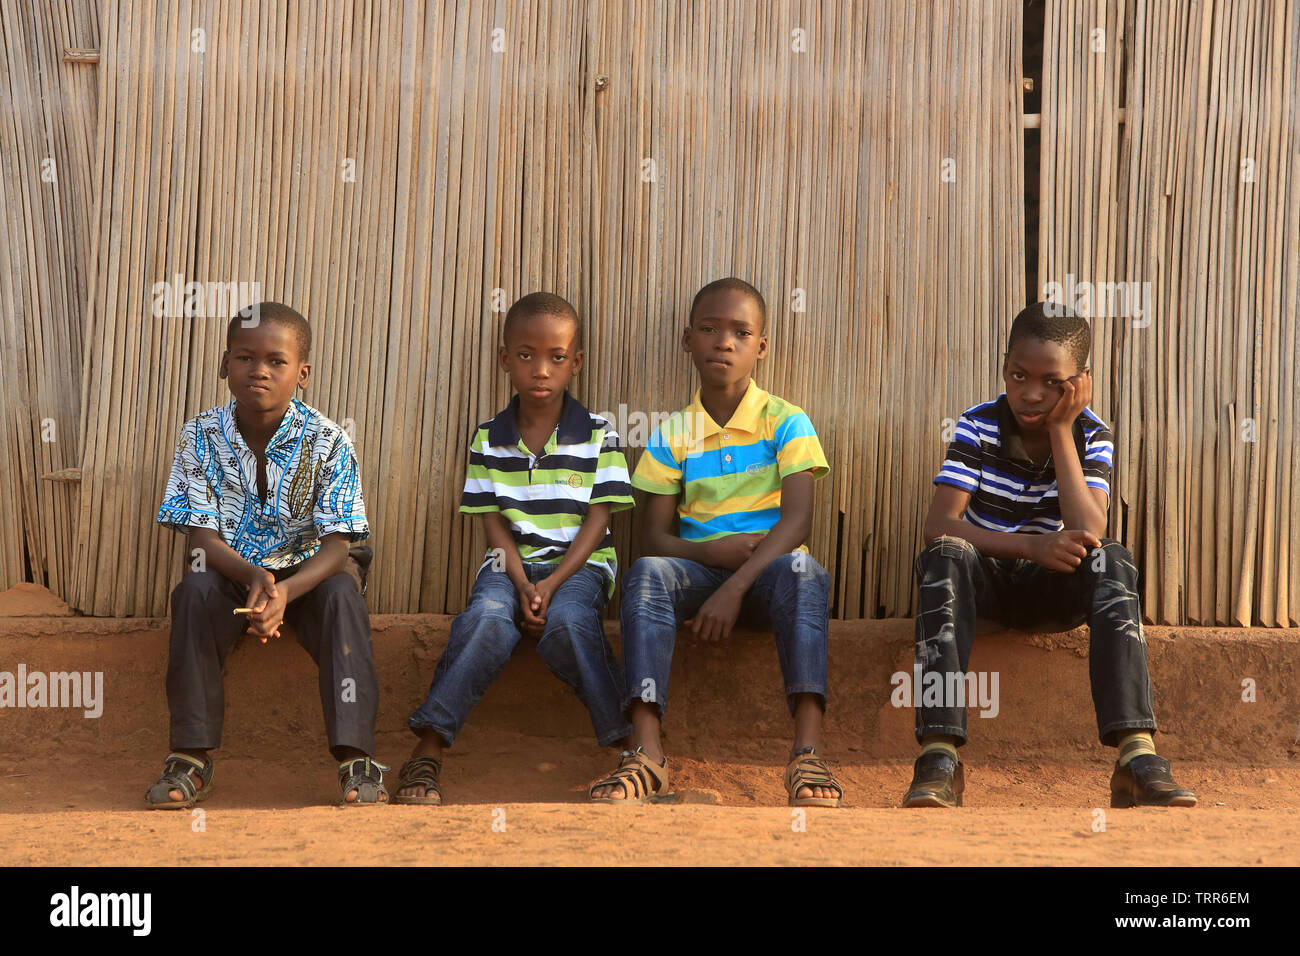 Jeunes enfants togolais assis sur onu muret. Atakpamé. Il Togo. Afrique de l'Ouest. Foto Stock